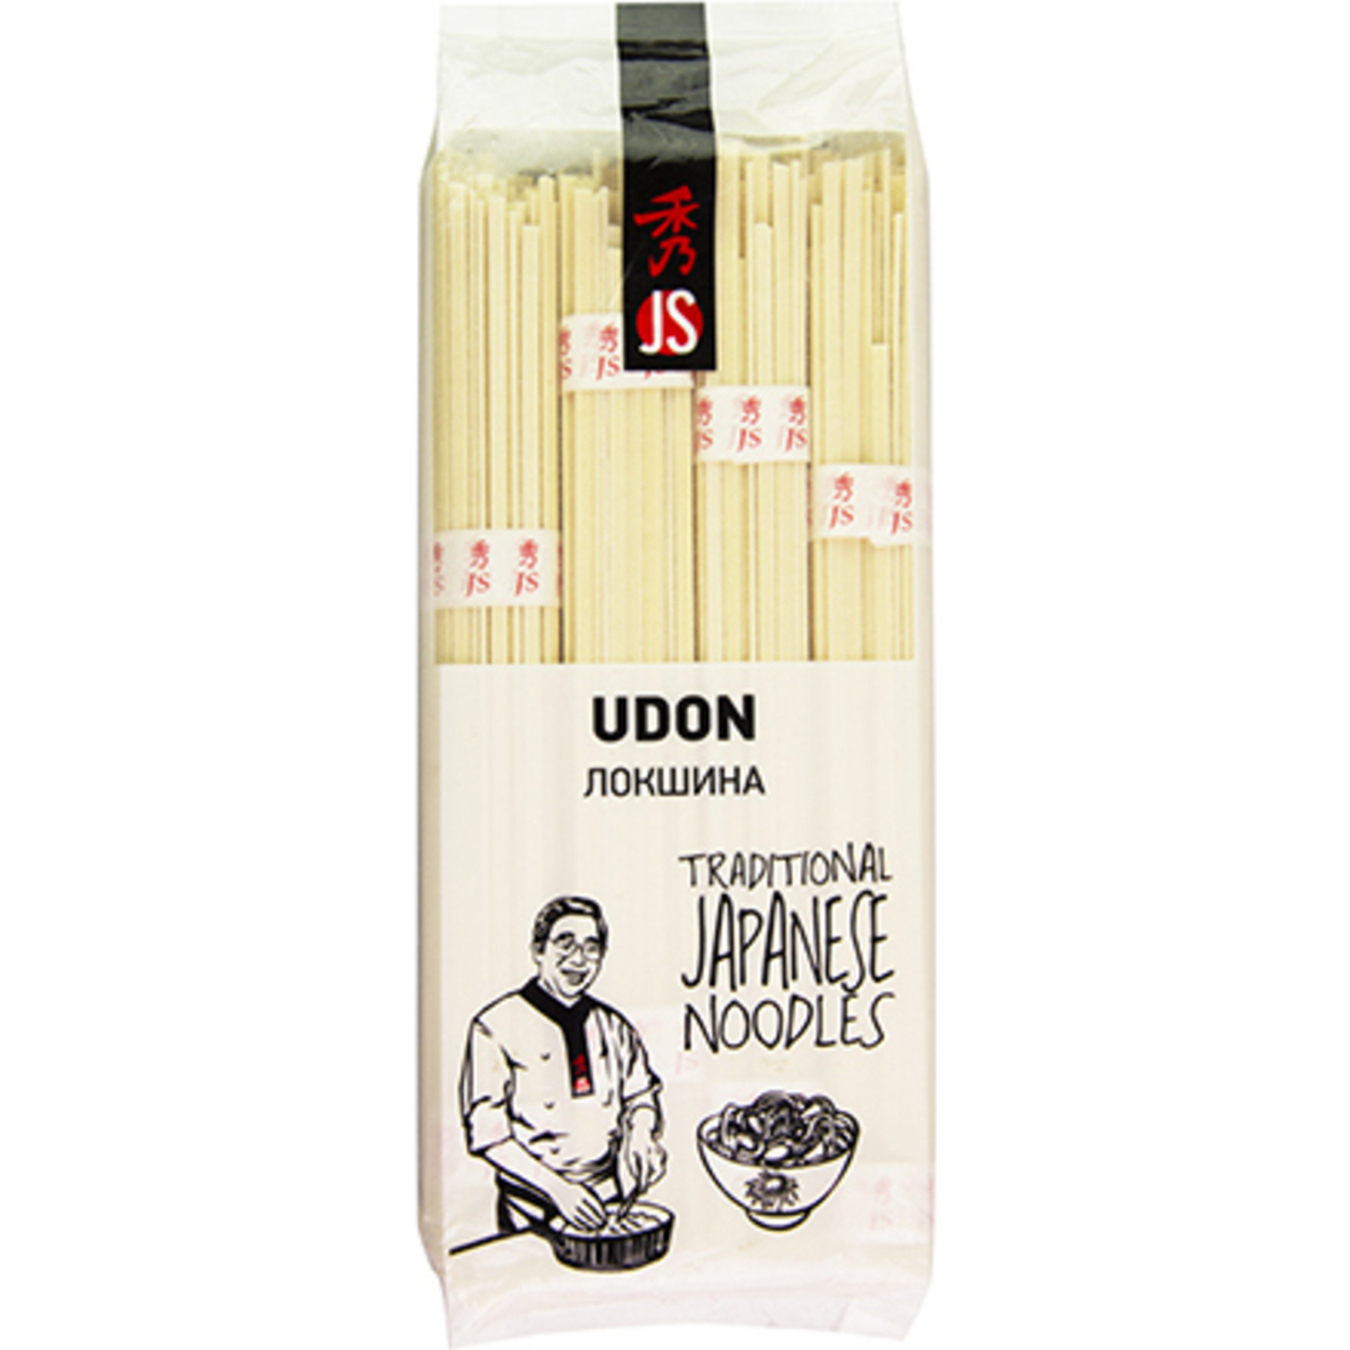 JS Udon Noodles Wheat Noodles 300g